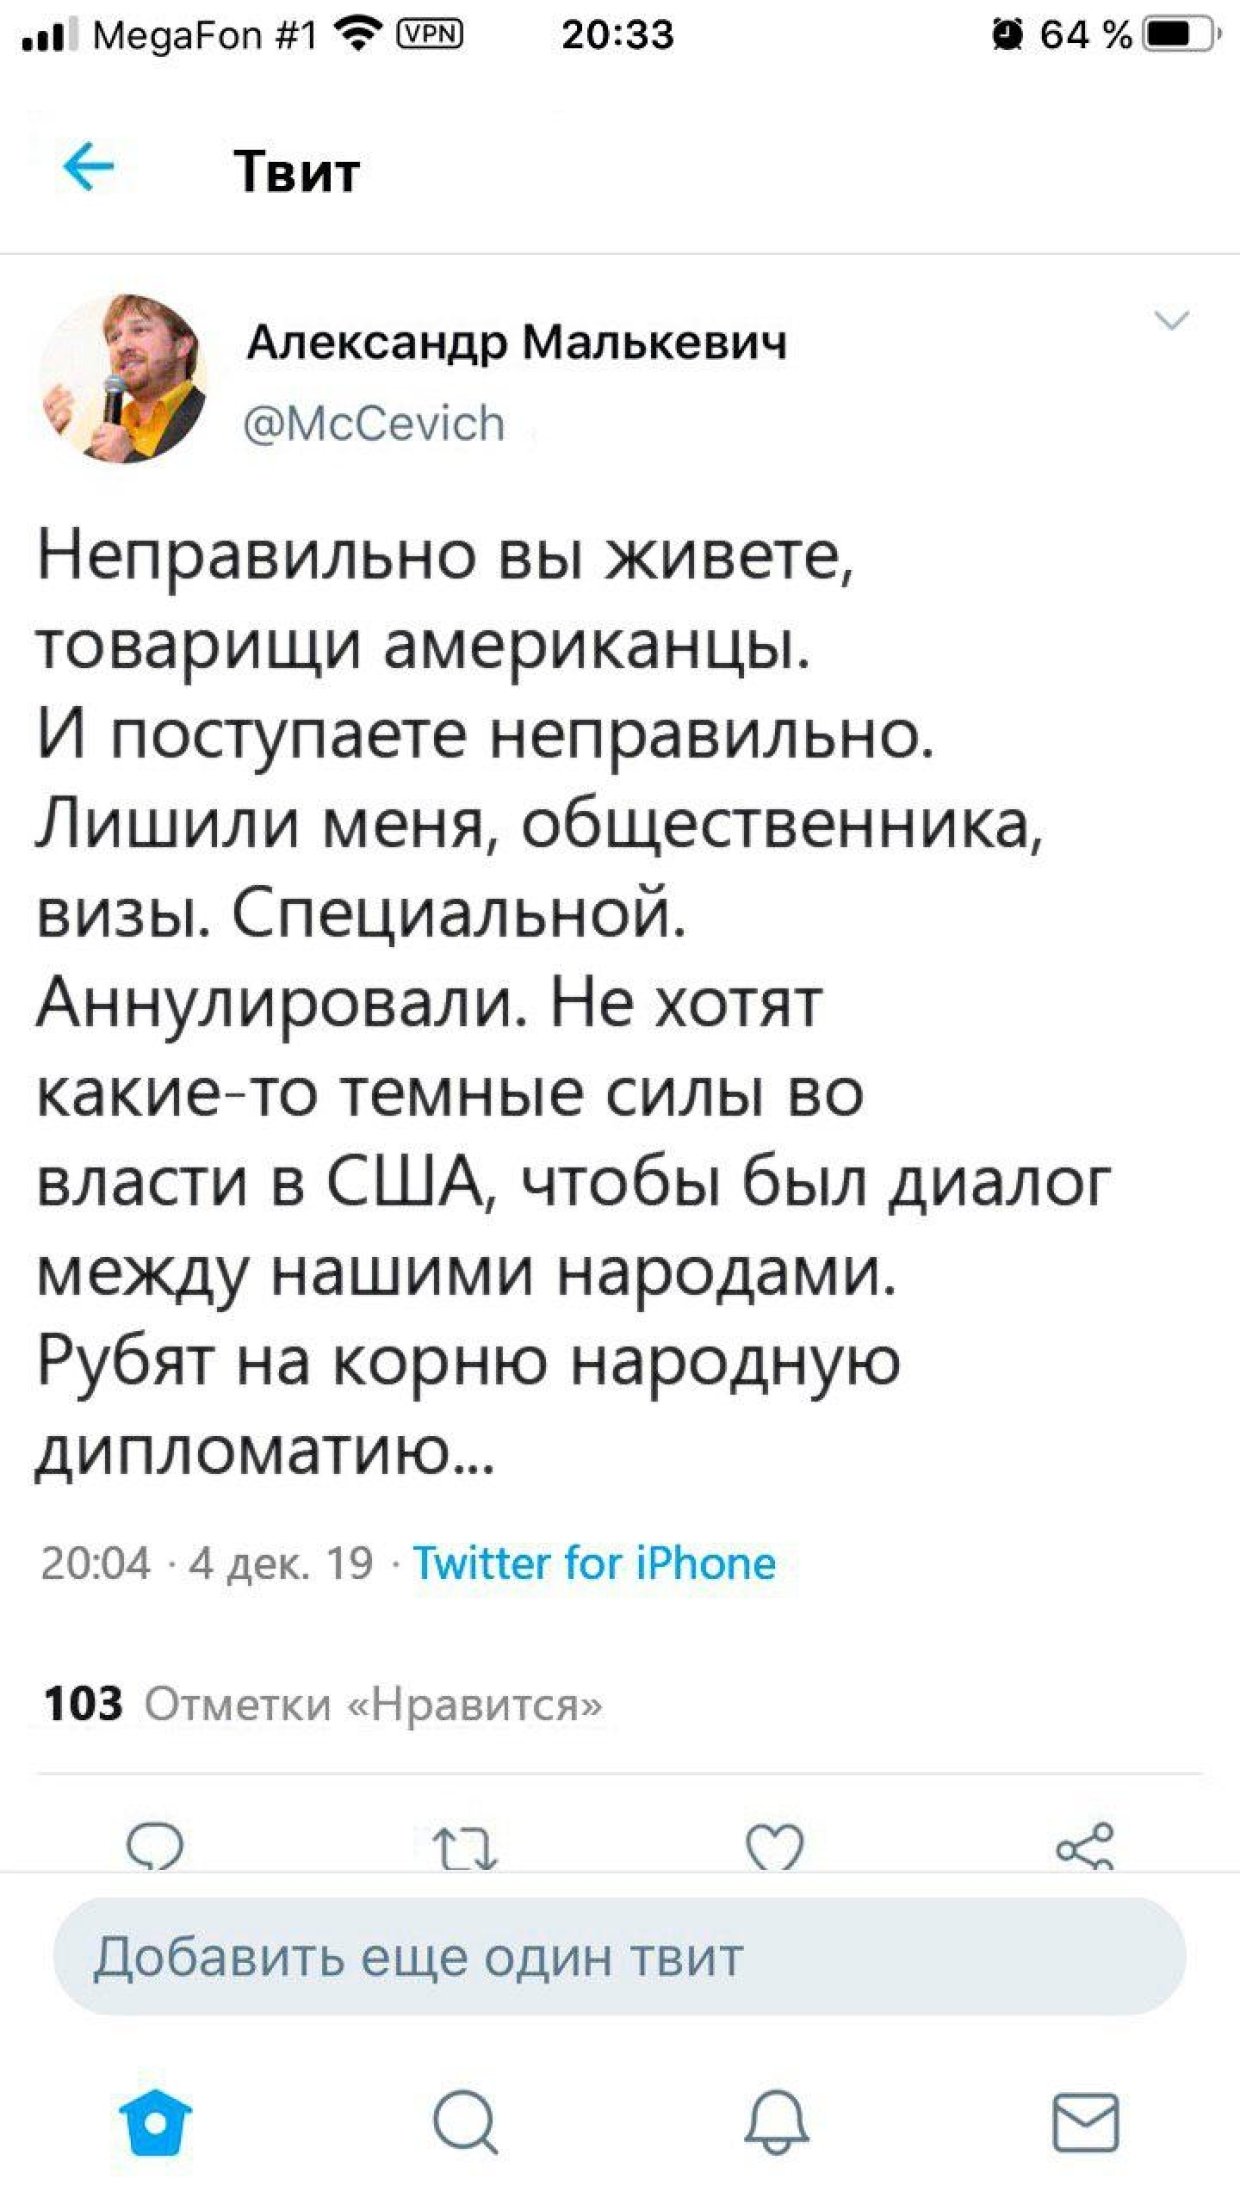 Манукян призвал к флешмобу в защиту Малькевича, пострадавшего от русофобии Twitter